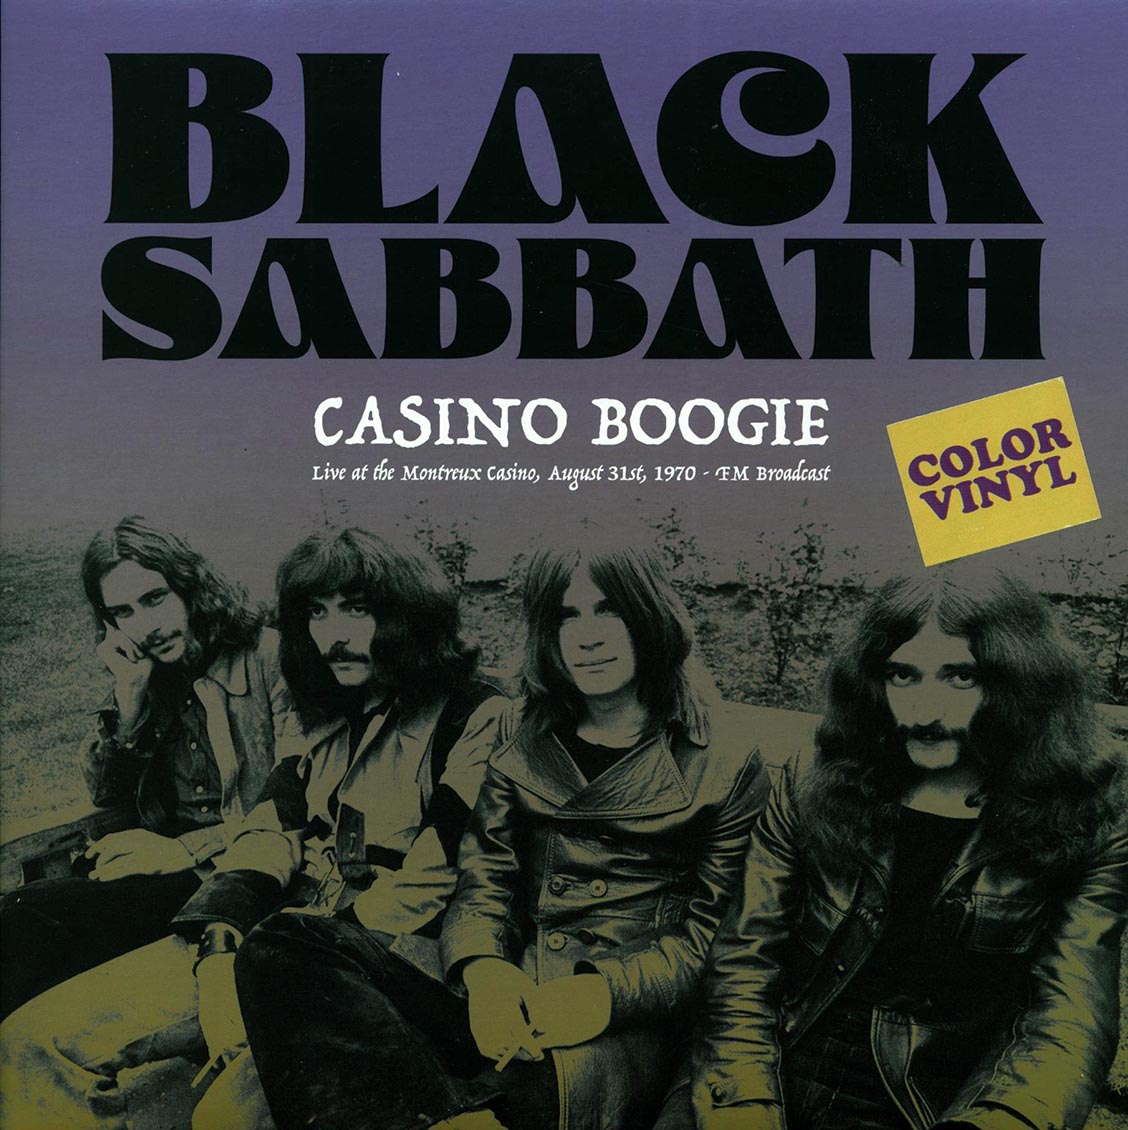 Black Sabbath - Casino Boogie: Live At The Montreux Casino, August 31st 1970 FM Broadcast (colored vinyl) - Vinyl LP